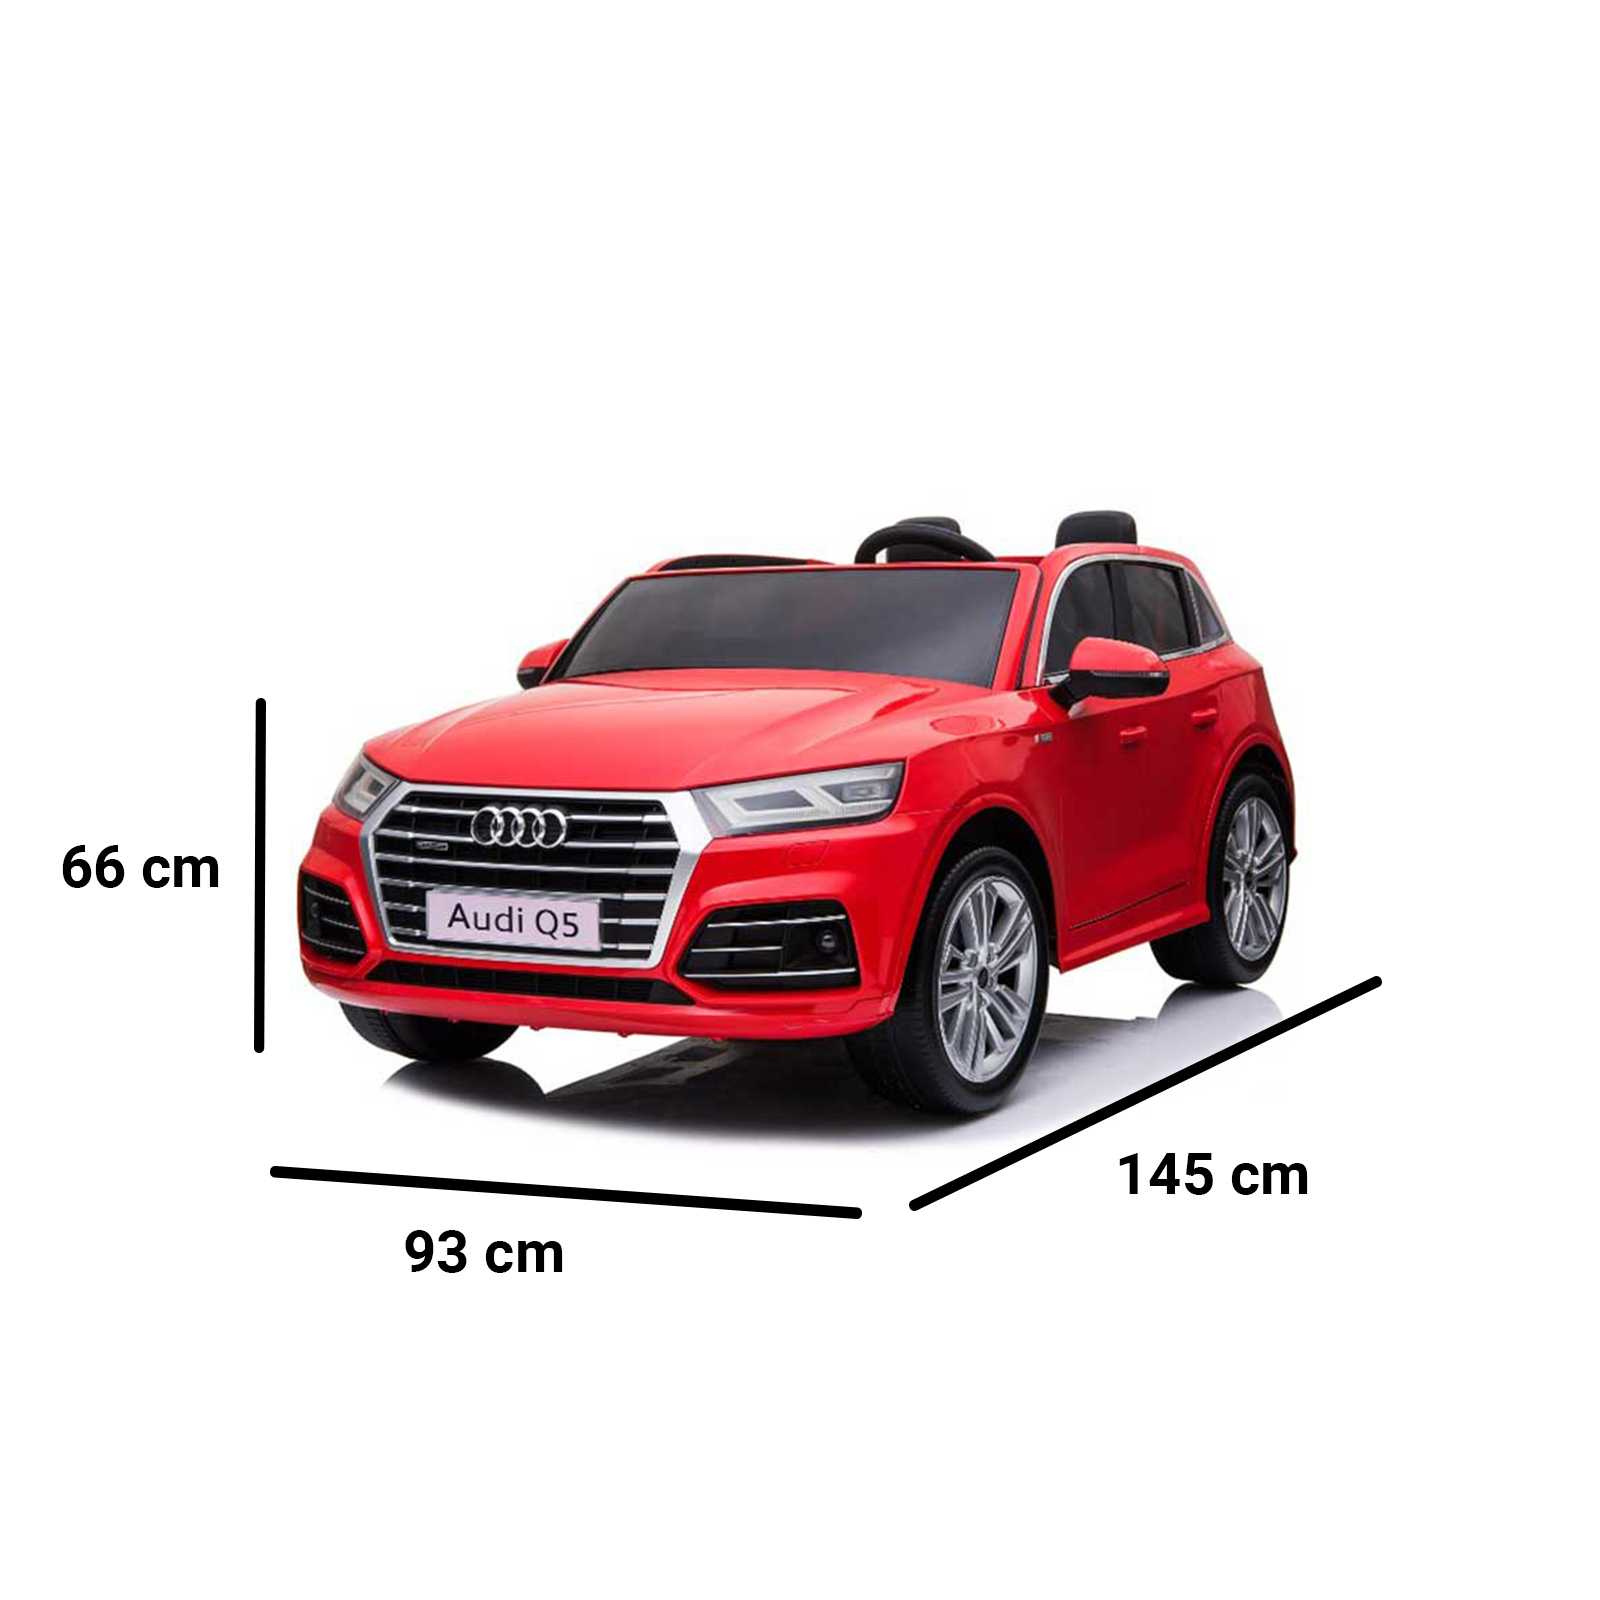 Audi Q5 giocattolo dimensioni